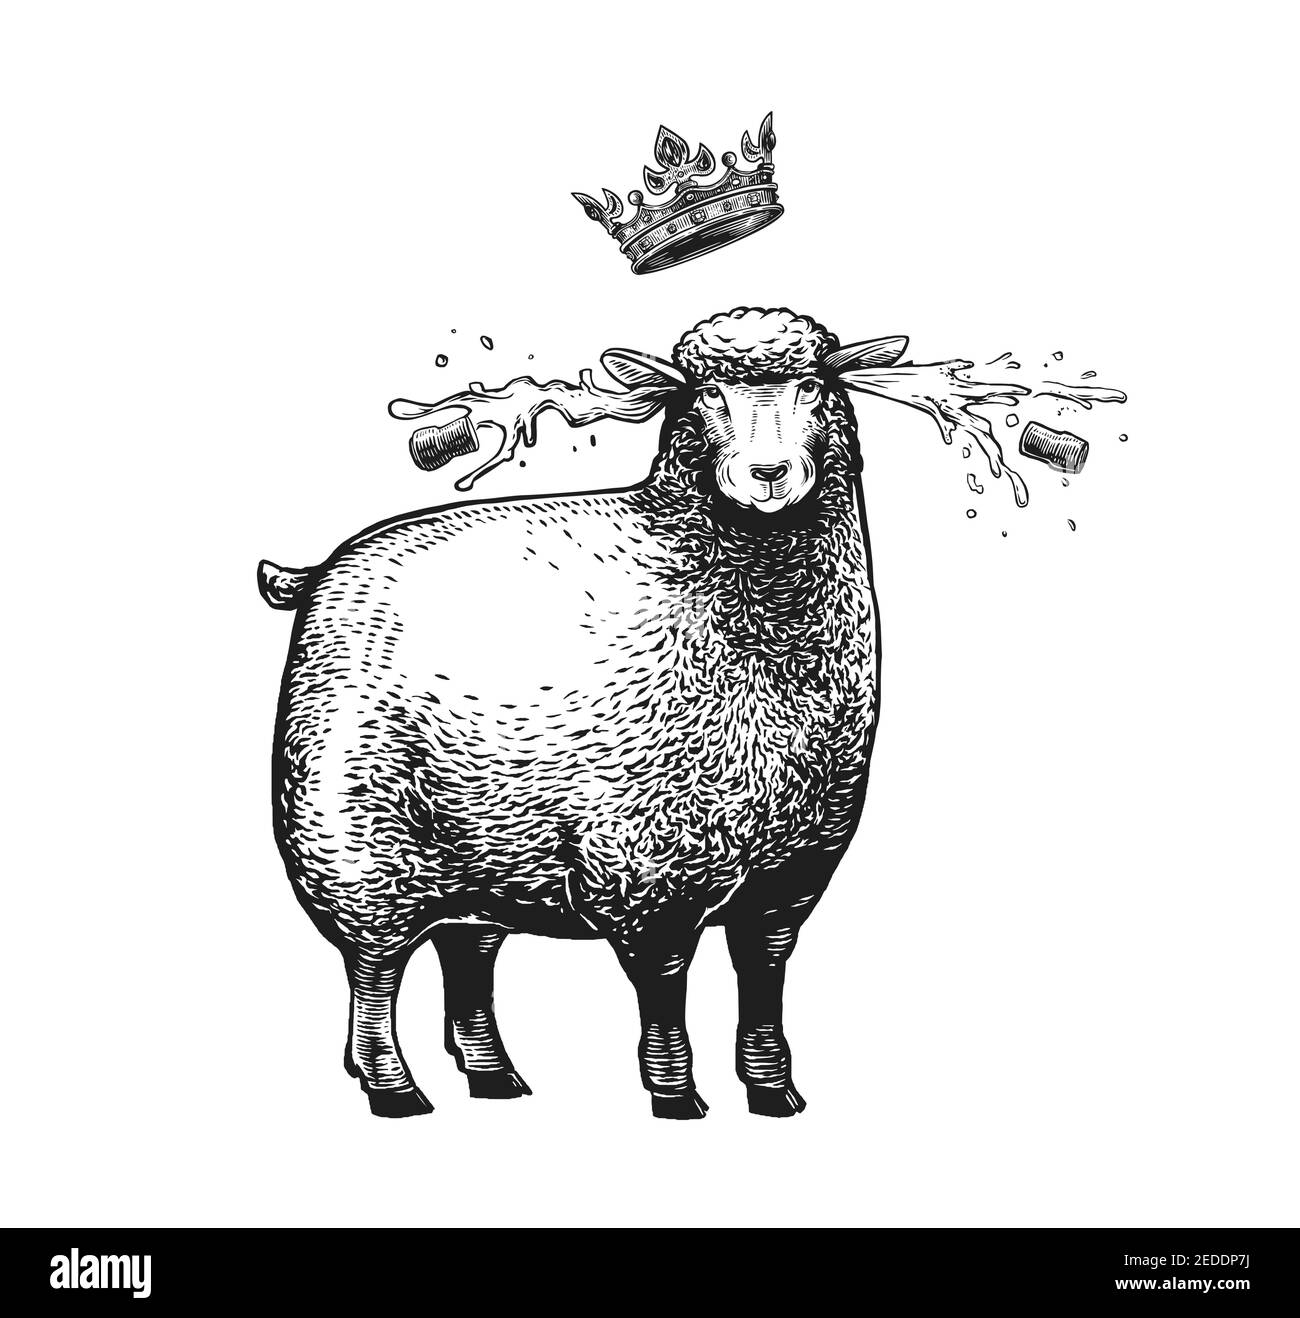 Bande dessinée Sheep stylisée avec la couronne au-dessus de sa tête. Illustration vectorielle de la Reine Sheep en style graphique sur fond blanc. Illustration de Vecteur